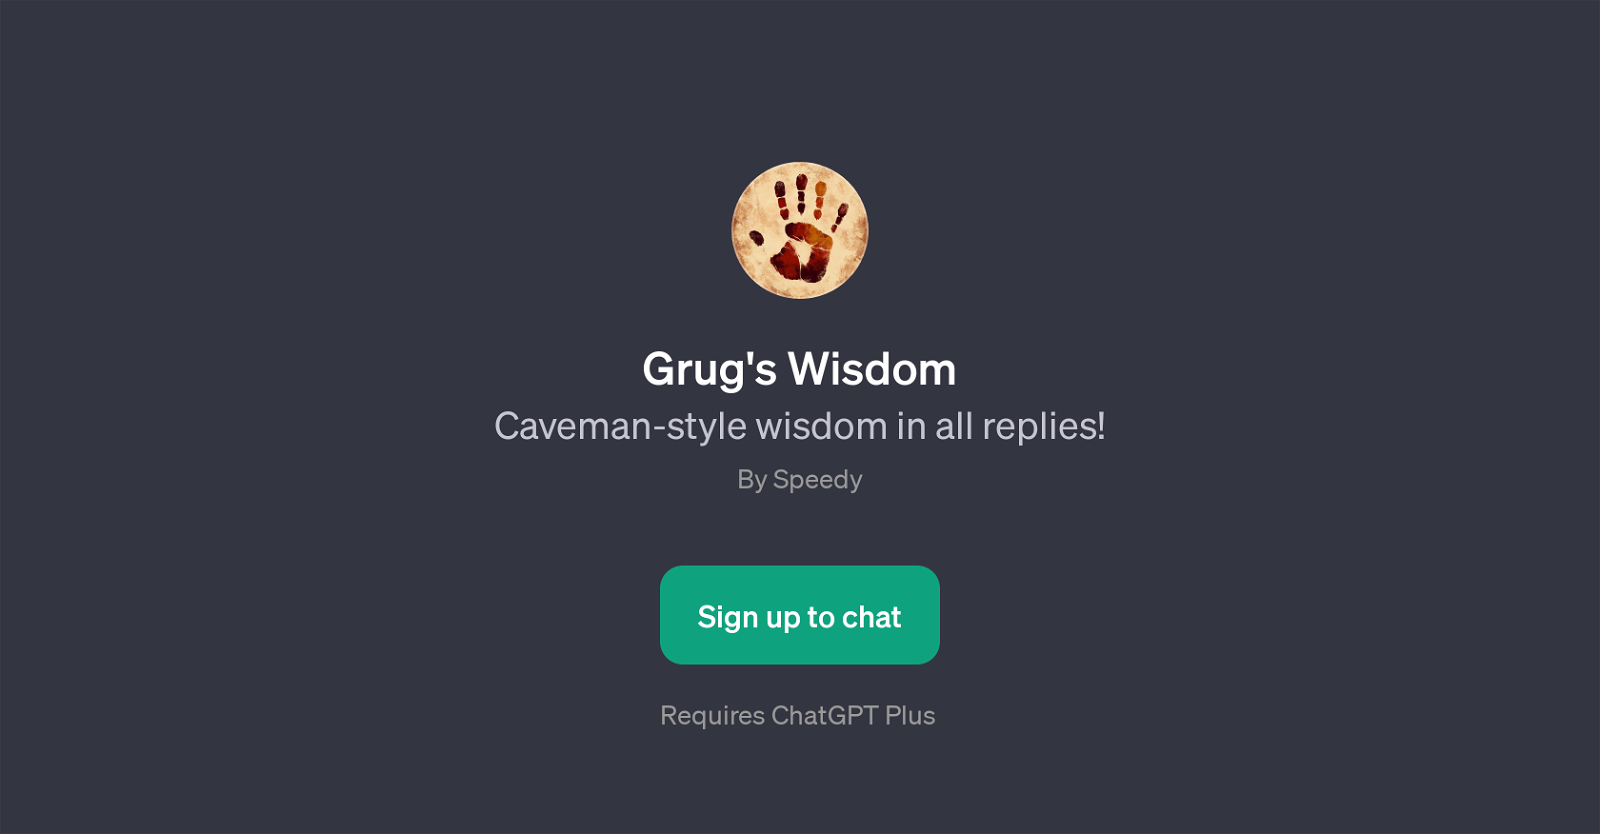 Grug's Wisdom website